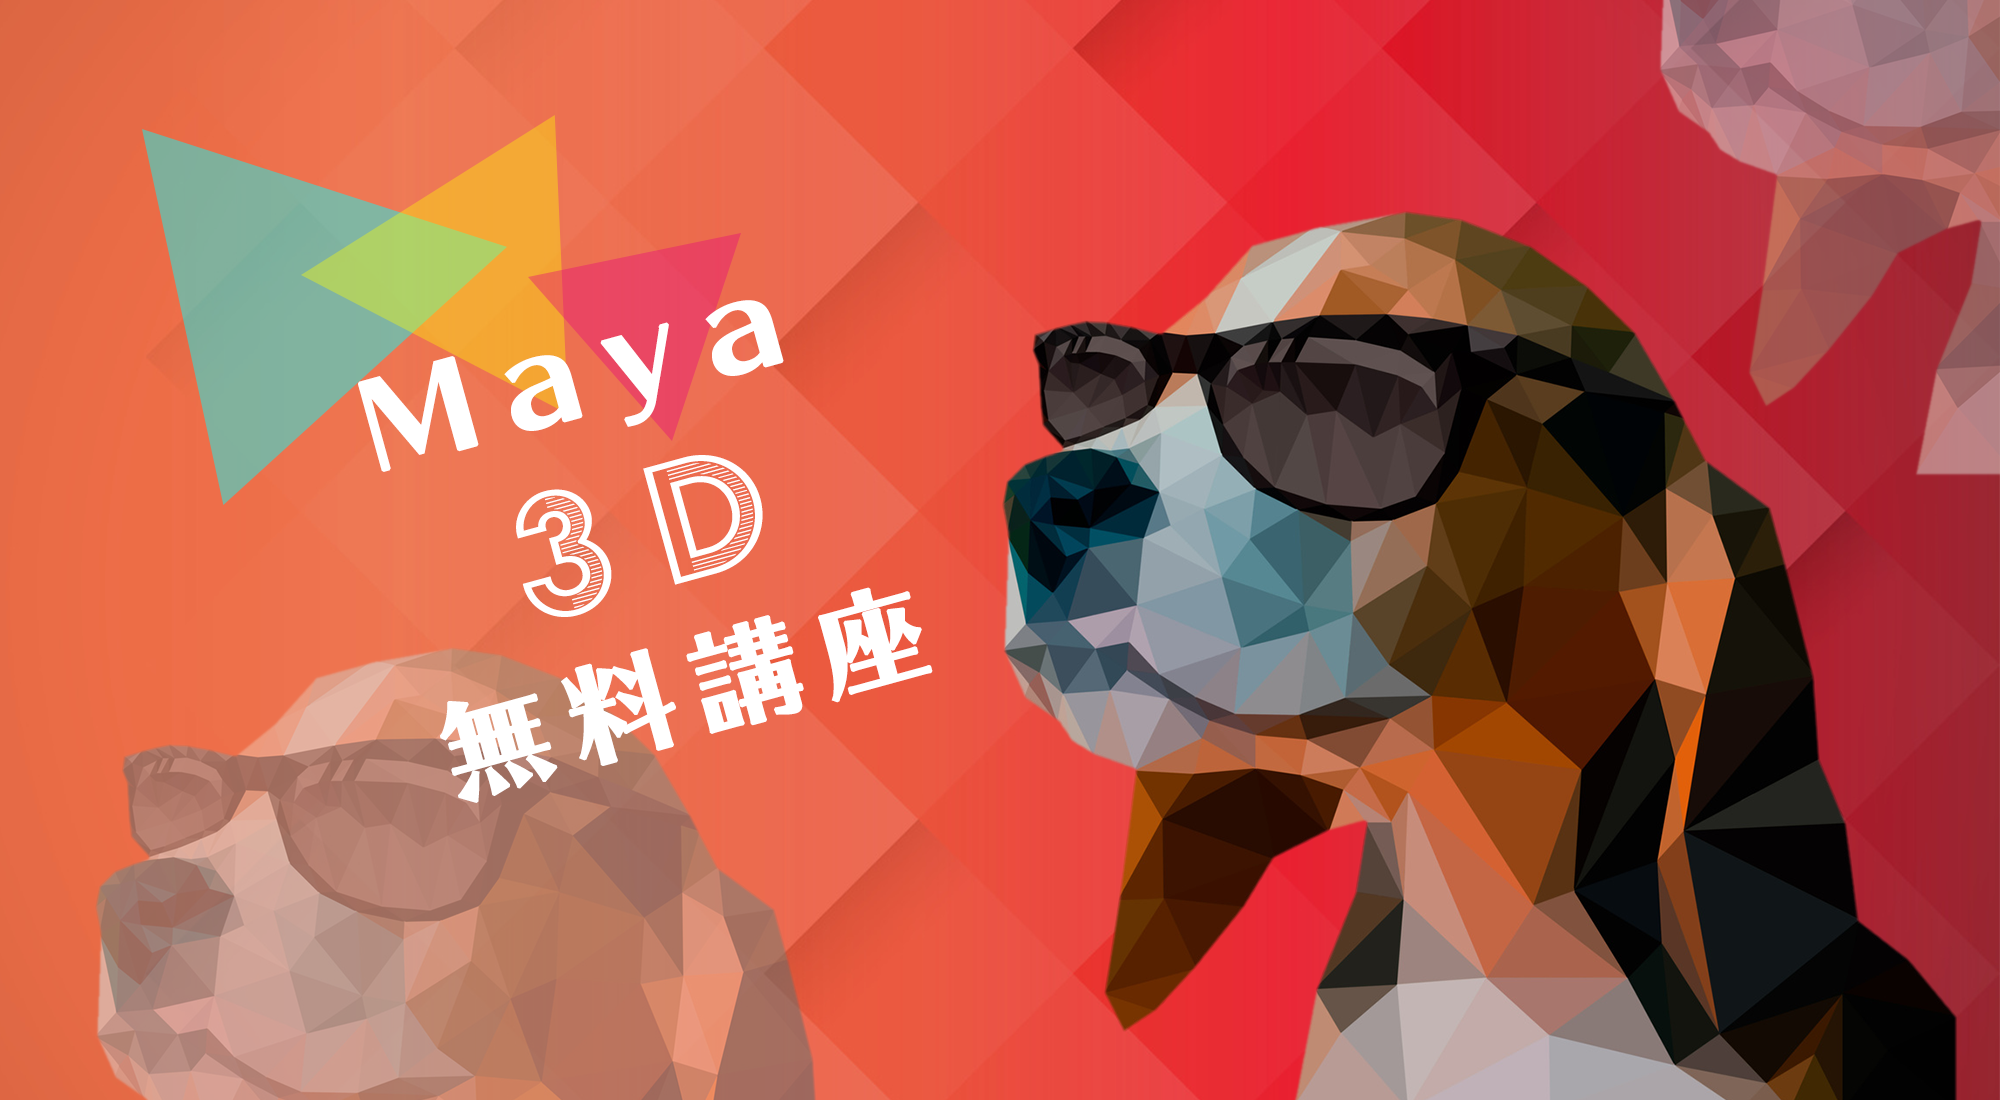 Maya 3d無料講座 未経験からプロのクリエイターを目指せる